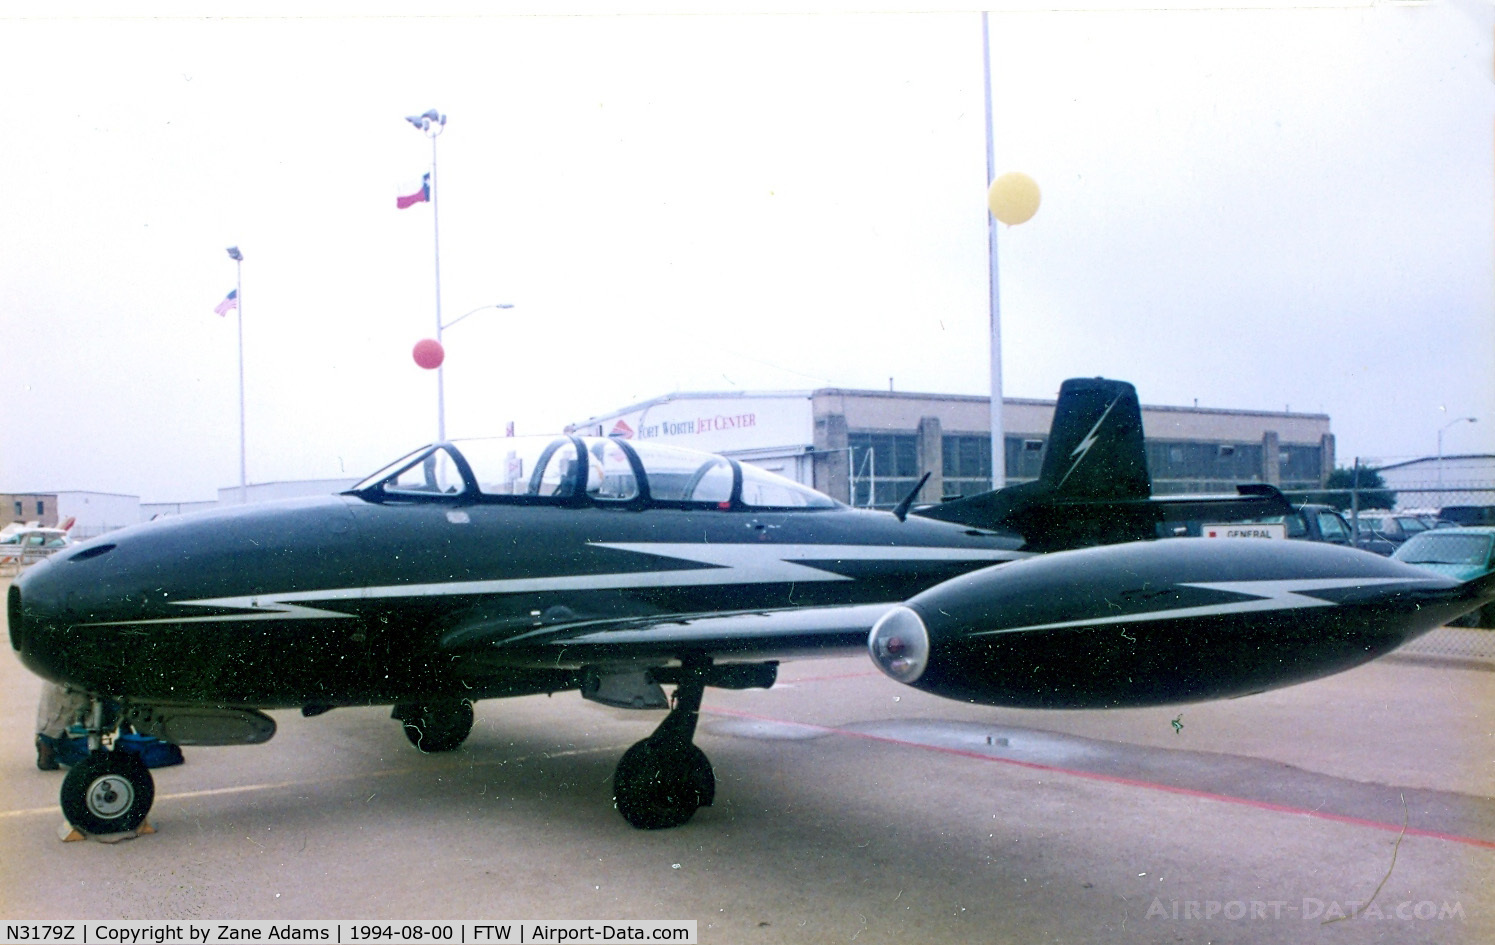 N3179Z, 1965 Hispano HA-220D Saeta C/N 20/61, HA-200 Saeta at Meacham Field